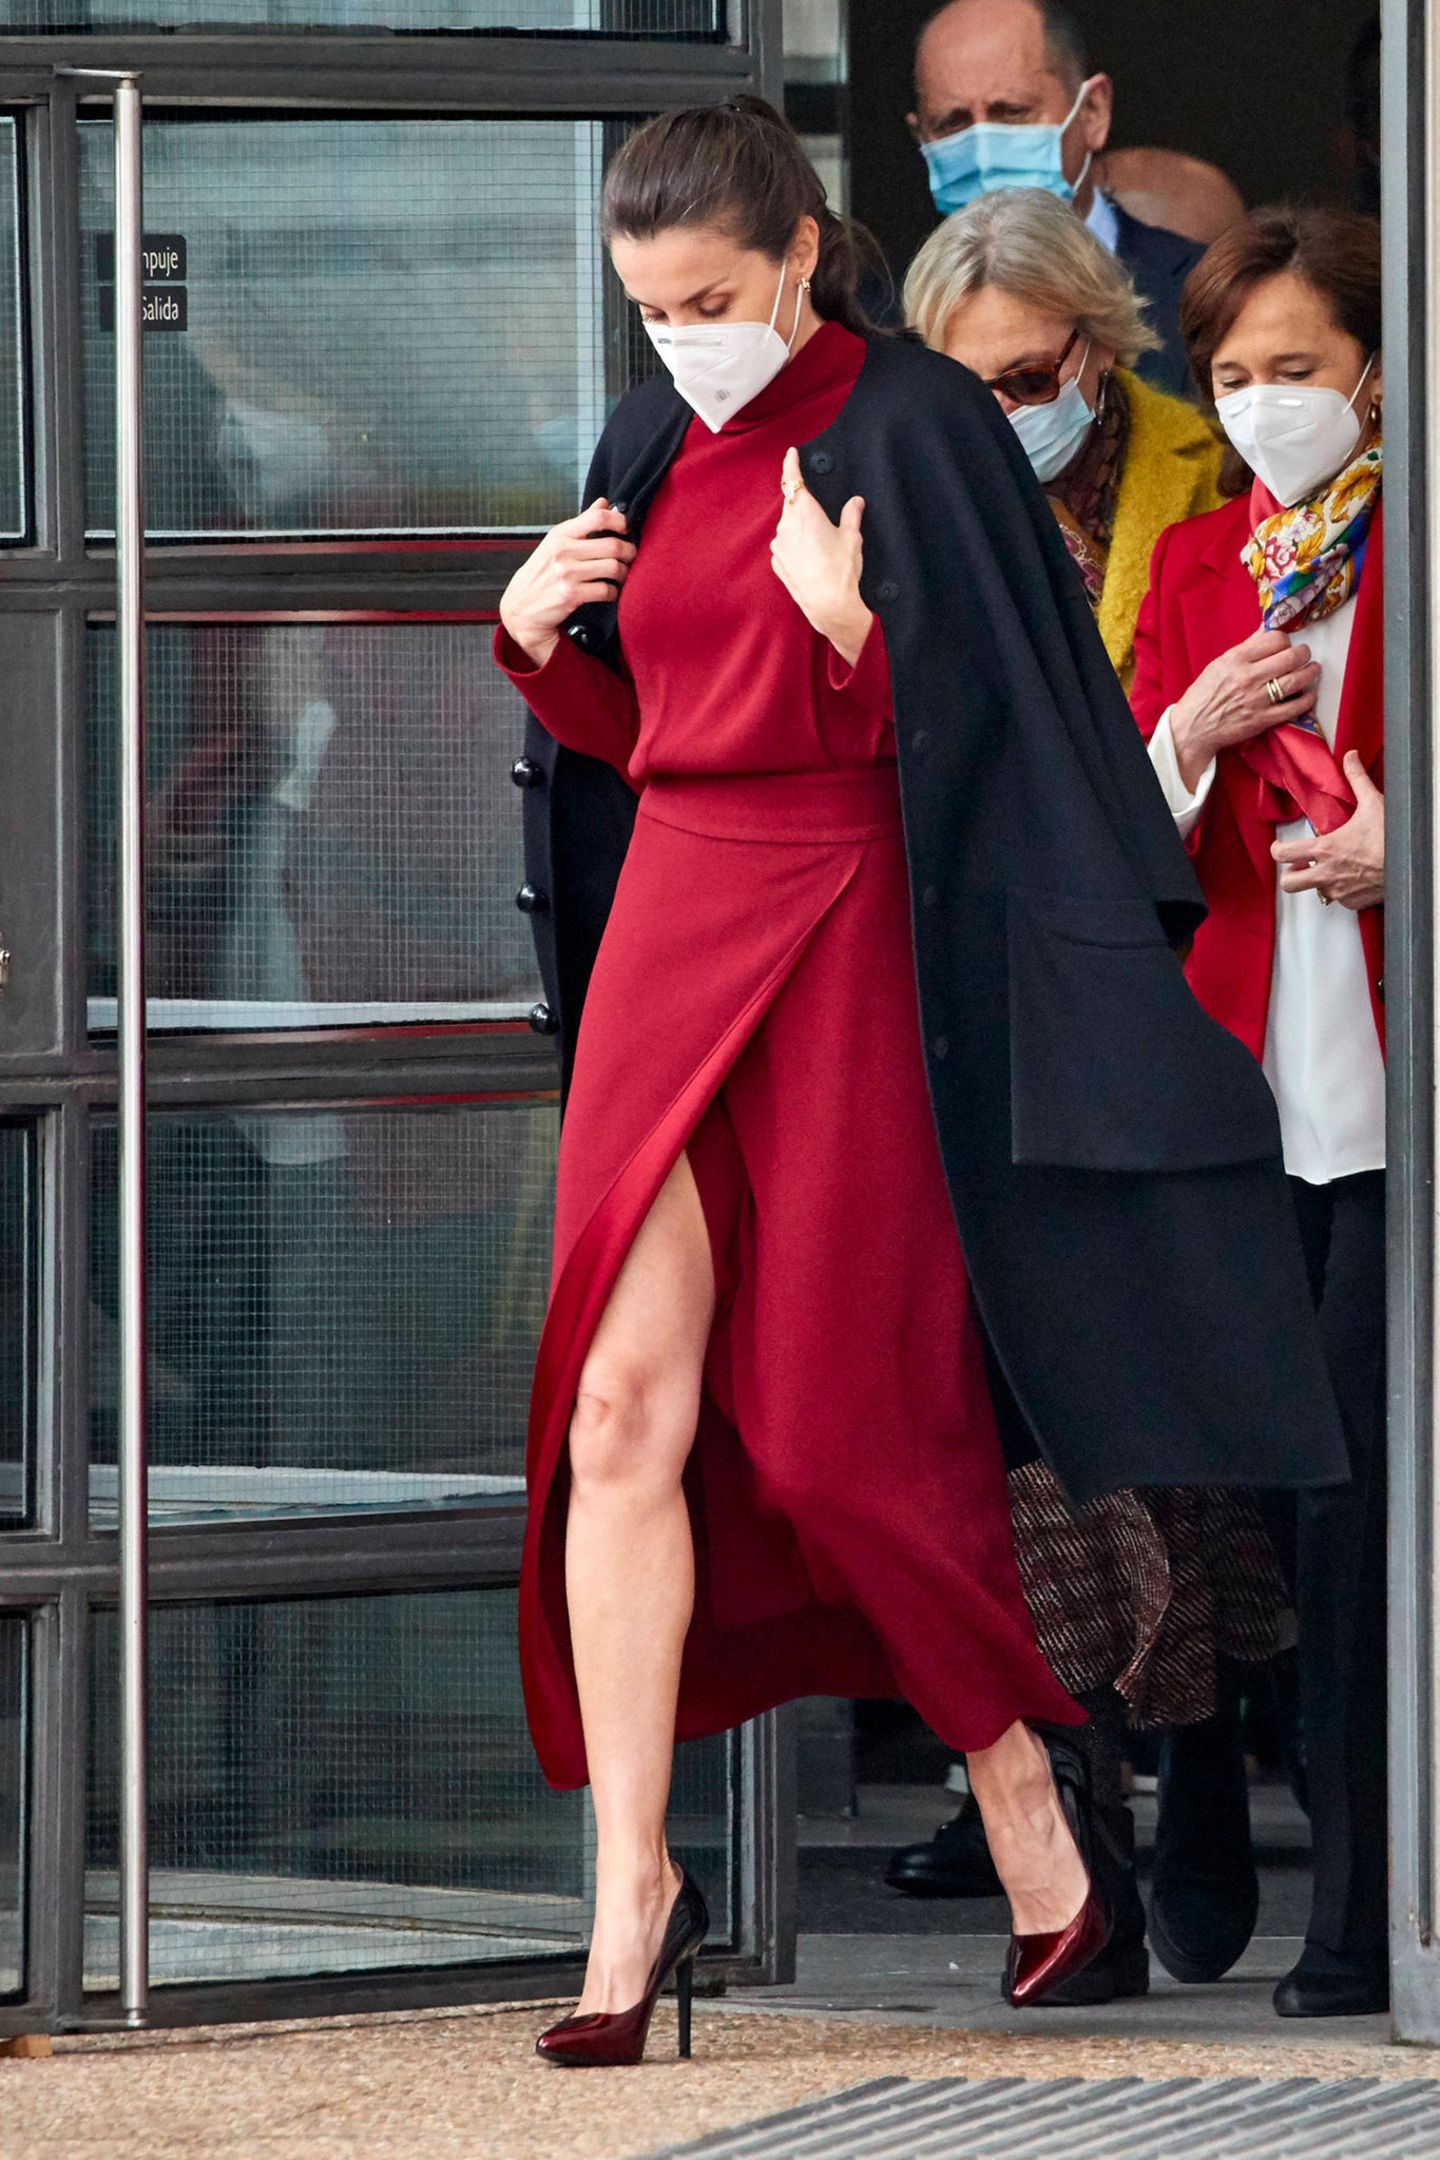 Wenn es um Stil geht, kann keiner Königin Letizia von Spanien etwas vormachen. Die Frau hat einfach Stil. Das bewies sie erst kürzlich beim Besuch in der Nationalbibliothek in Madrid. Das rote Kleid von Massimo Dutti mit suuuuuuper hohem Beinschlitz sieht einfach toll aus. Aber irgendwie kommt uns der Look bekannt vor ...